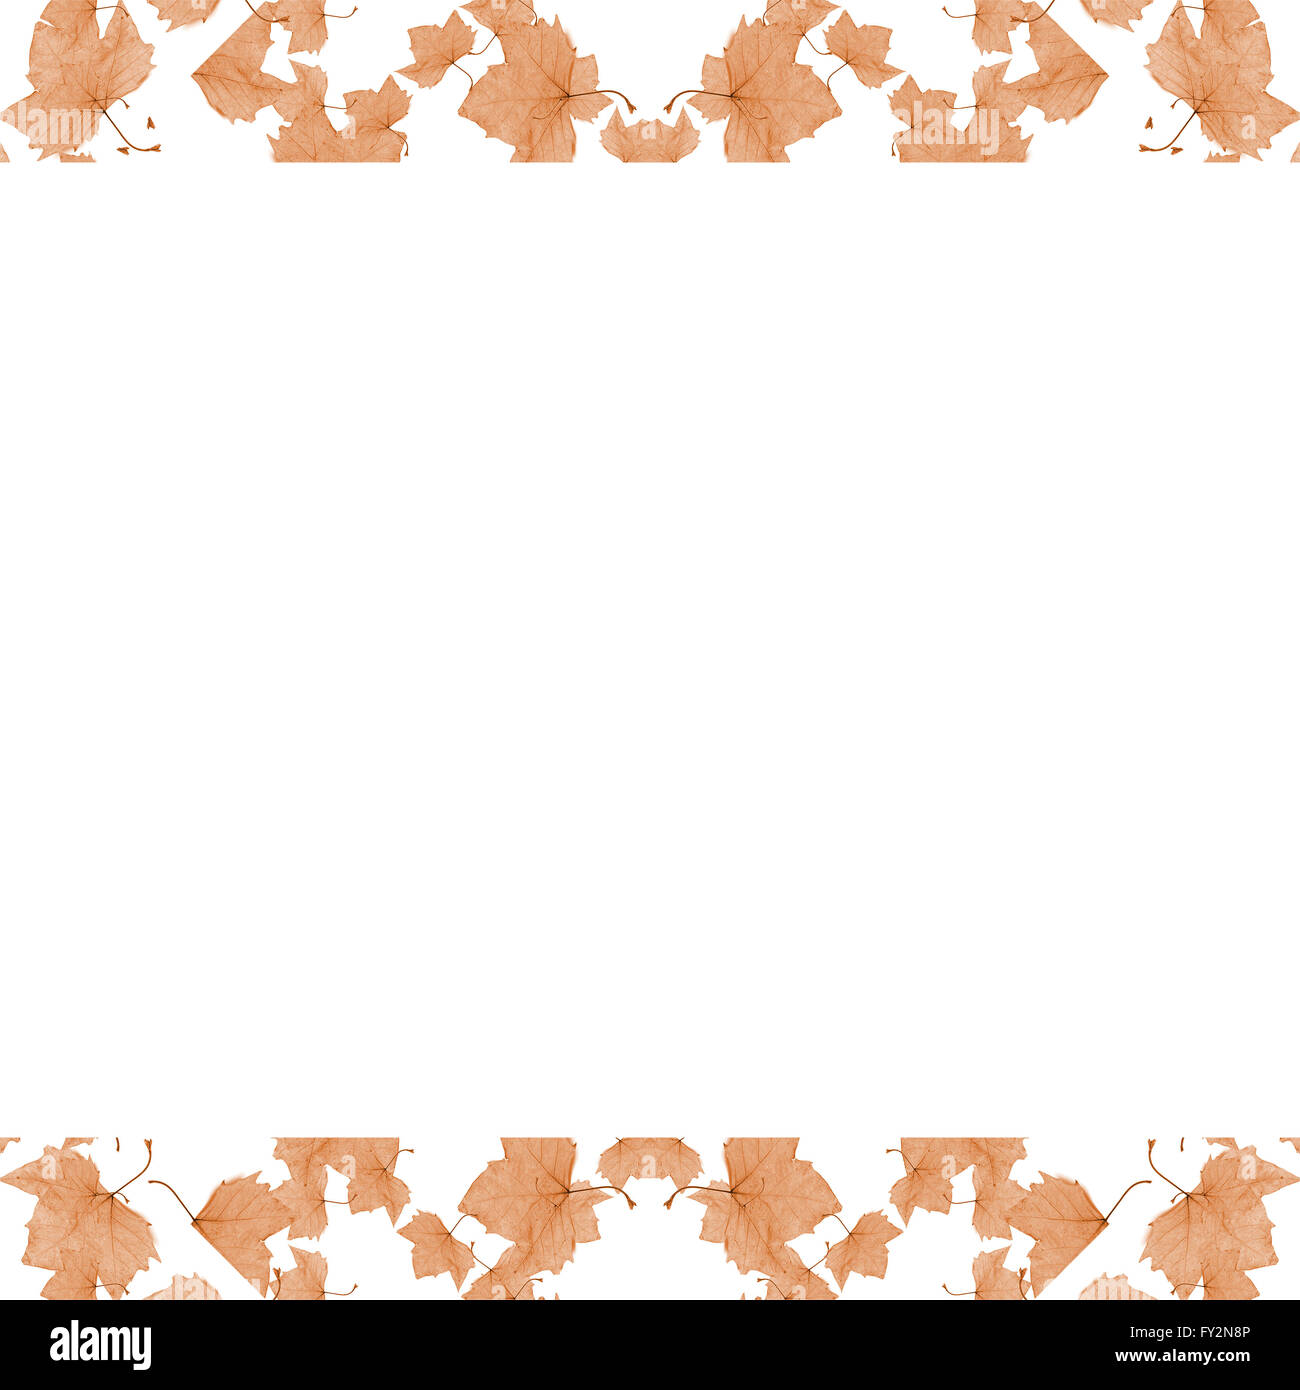 Sfondo bianco cornice con bordi decorati con motivi floreali design collage in pallidi toni di marrone Foto Stock